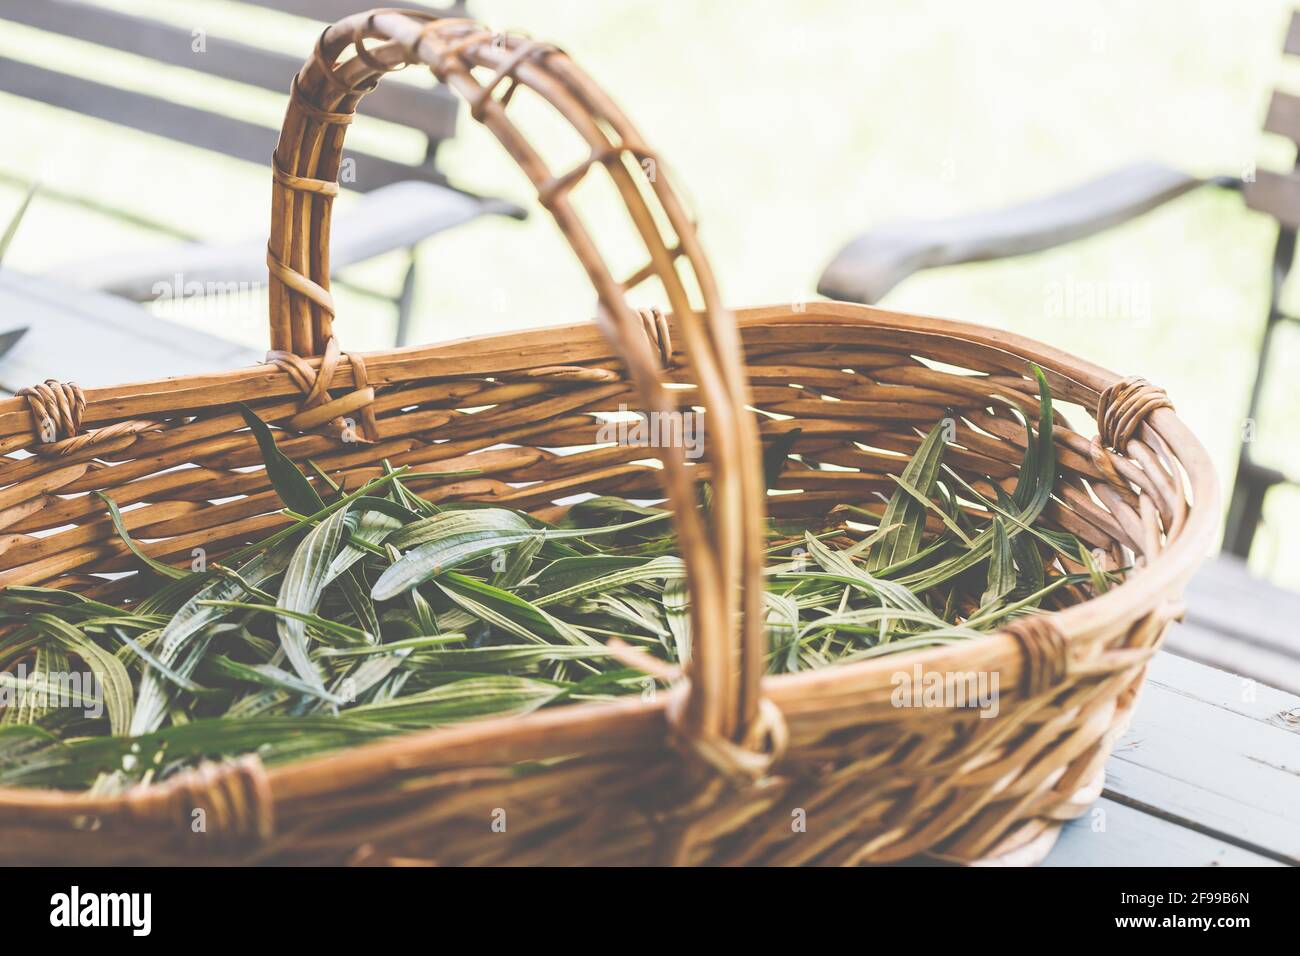 Ribwort plantain - une herbe médicinale qui atténue l'irritation, peut être utilisé, par exemple, comme un thé dans la naturopathie (Plantago lanceolata), kernelmoût, feuille de poumon, langue de serpent Banque D'Images